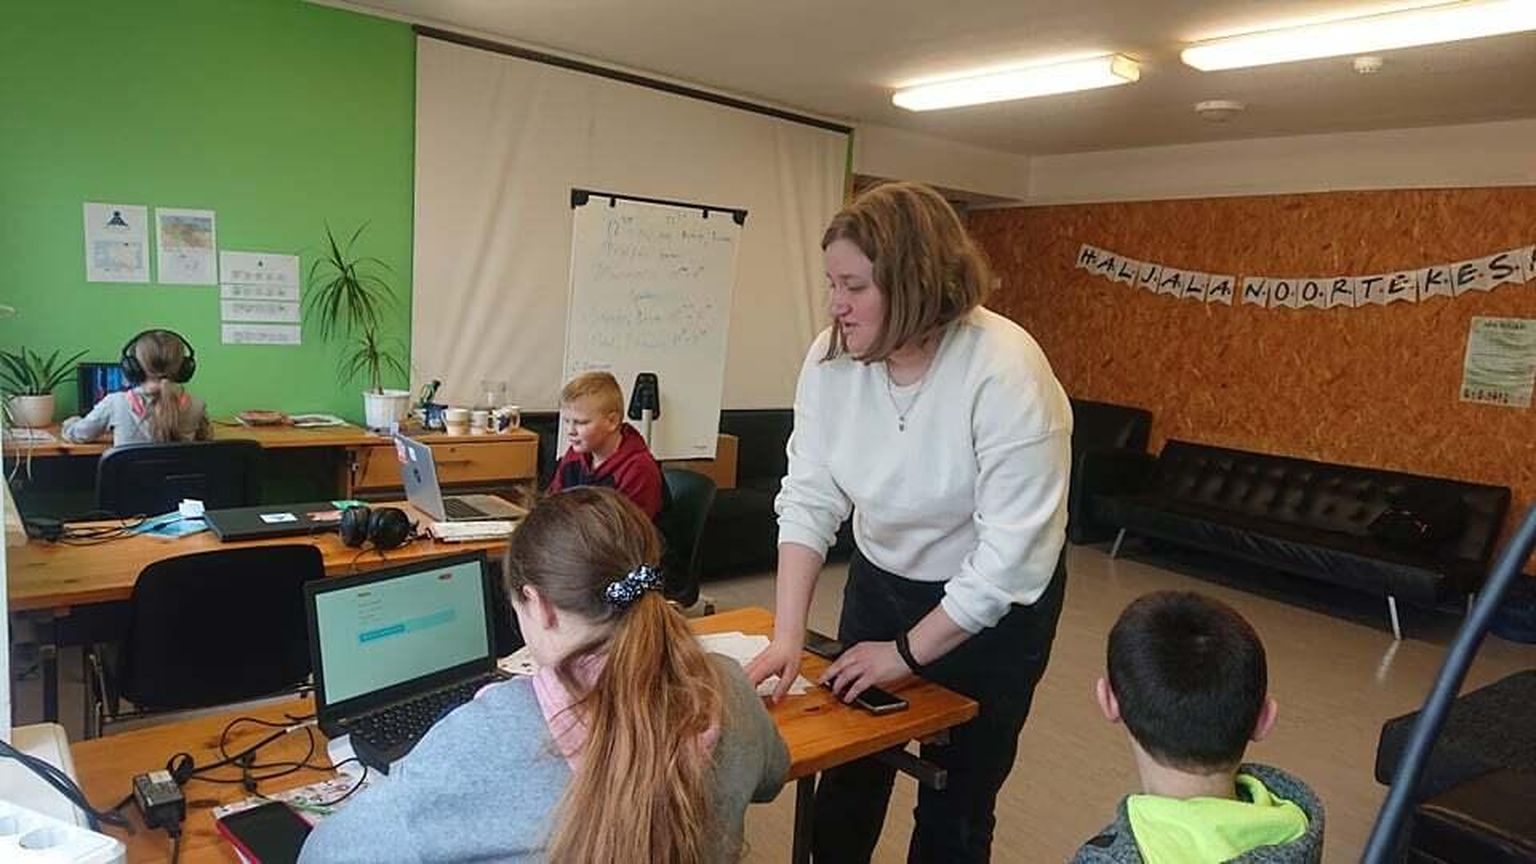 Анна Горло помогает детям выполнять домашнее задание в компьютере.